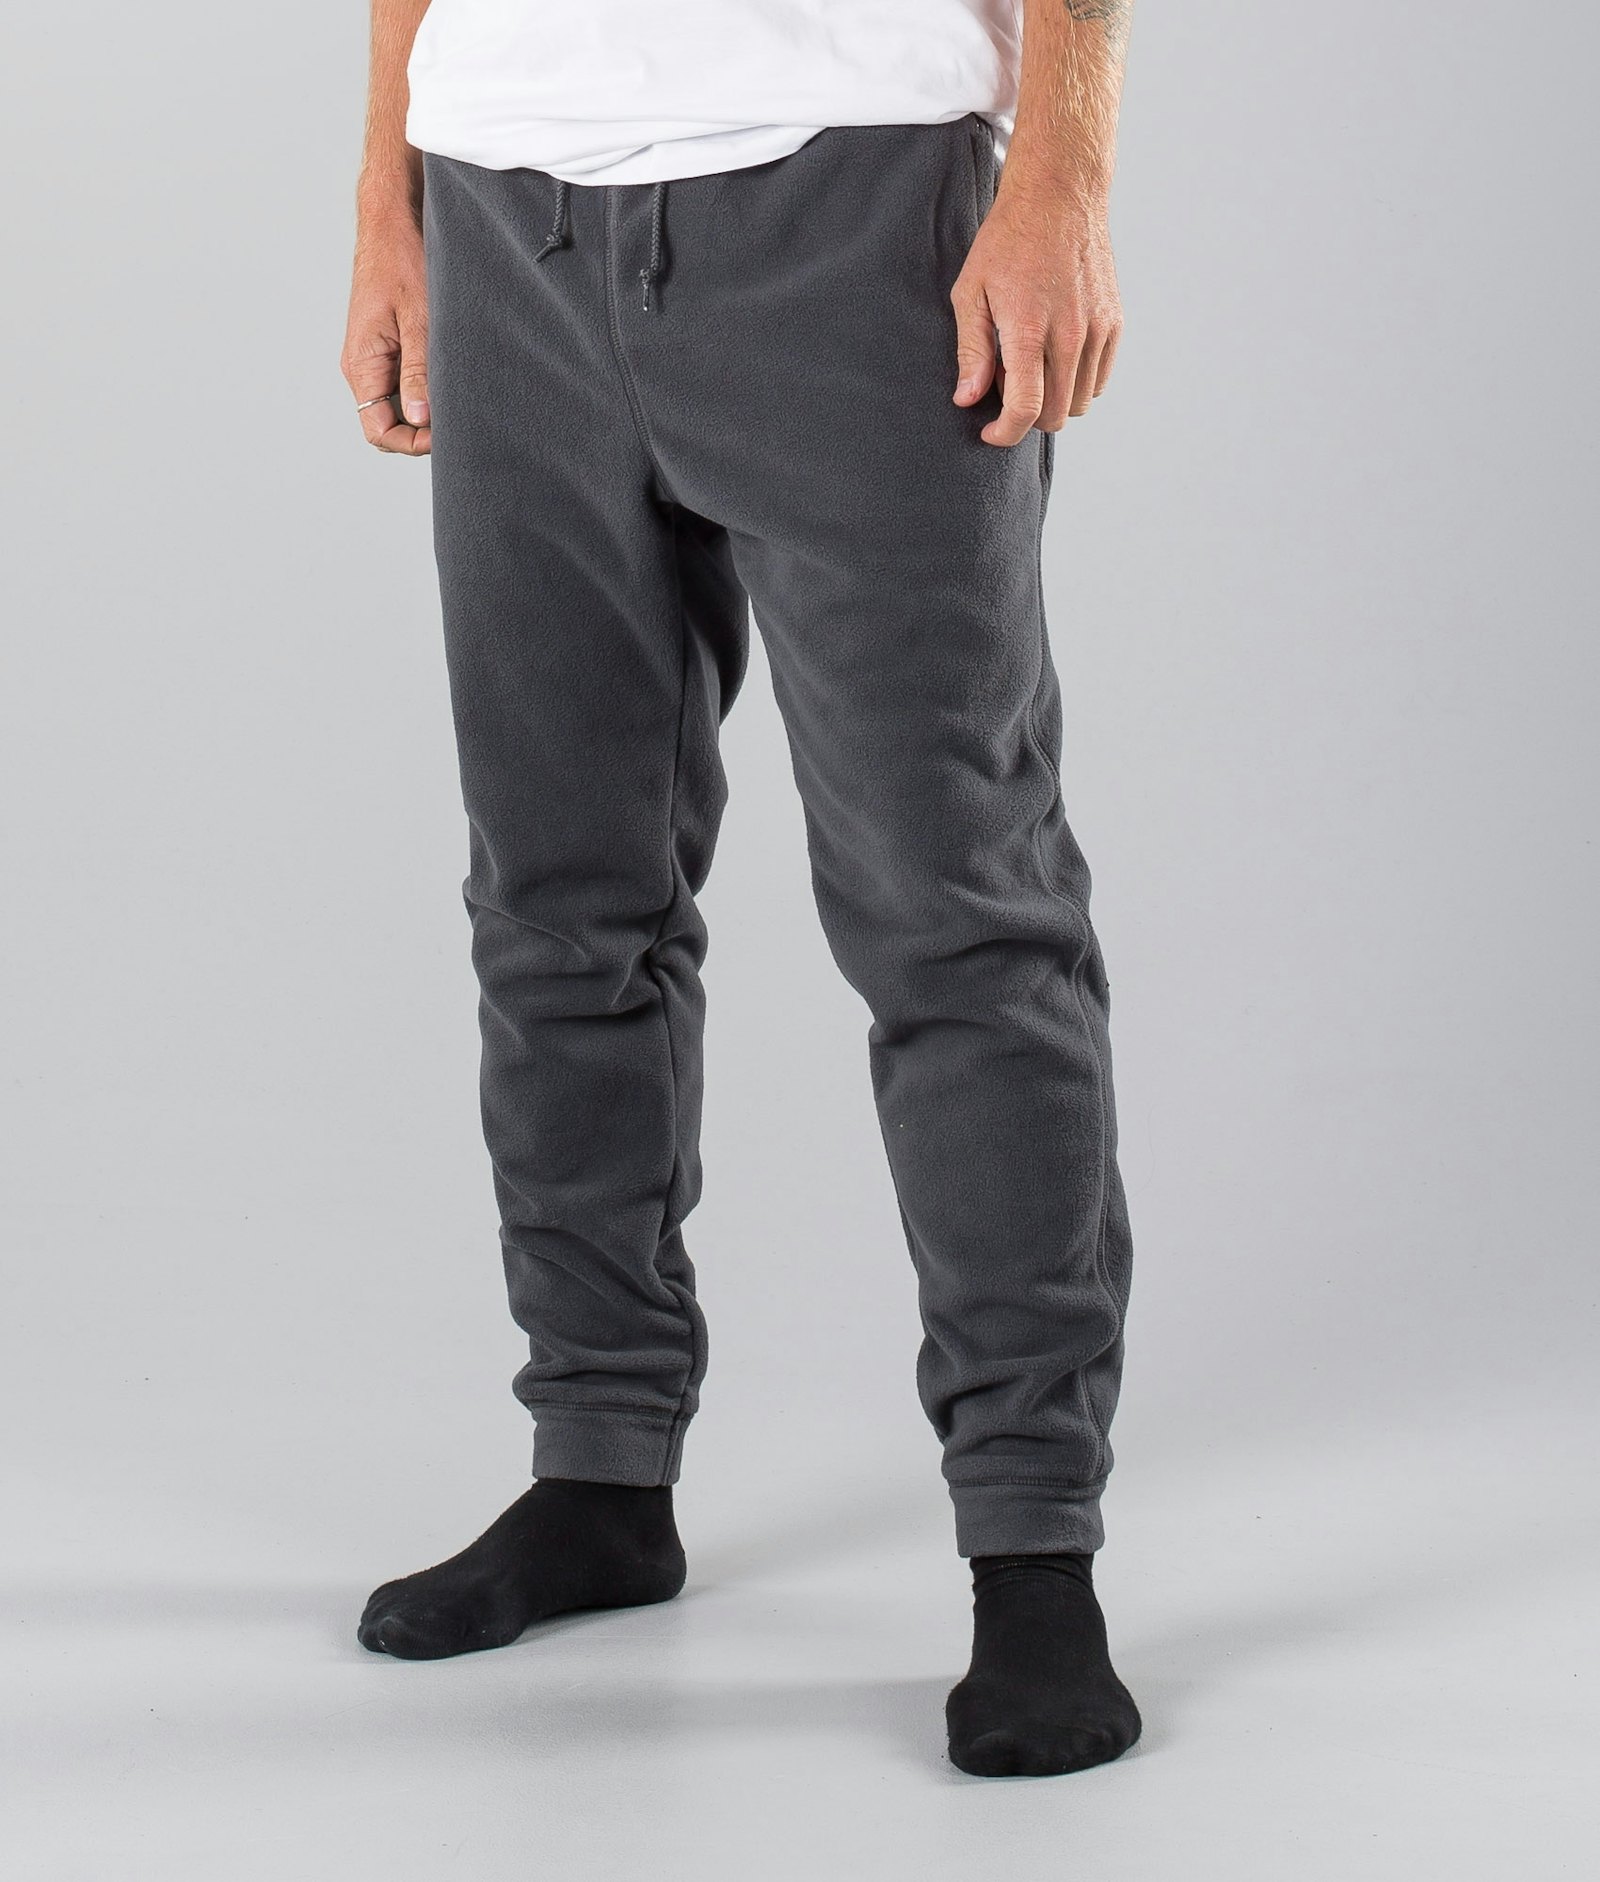 Dope Cozy Pantalones Hombre Dark Grey